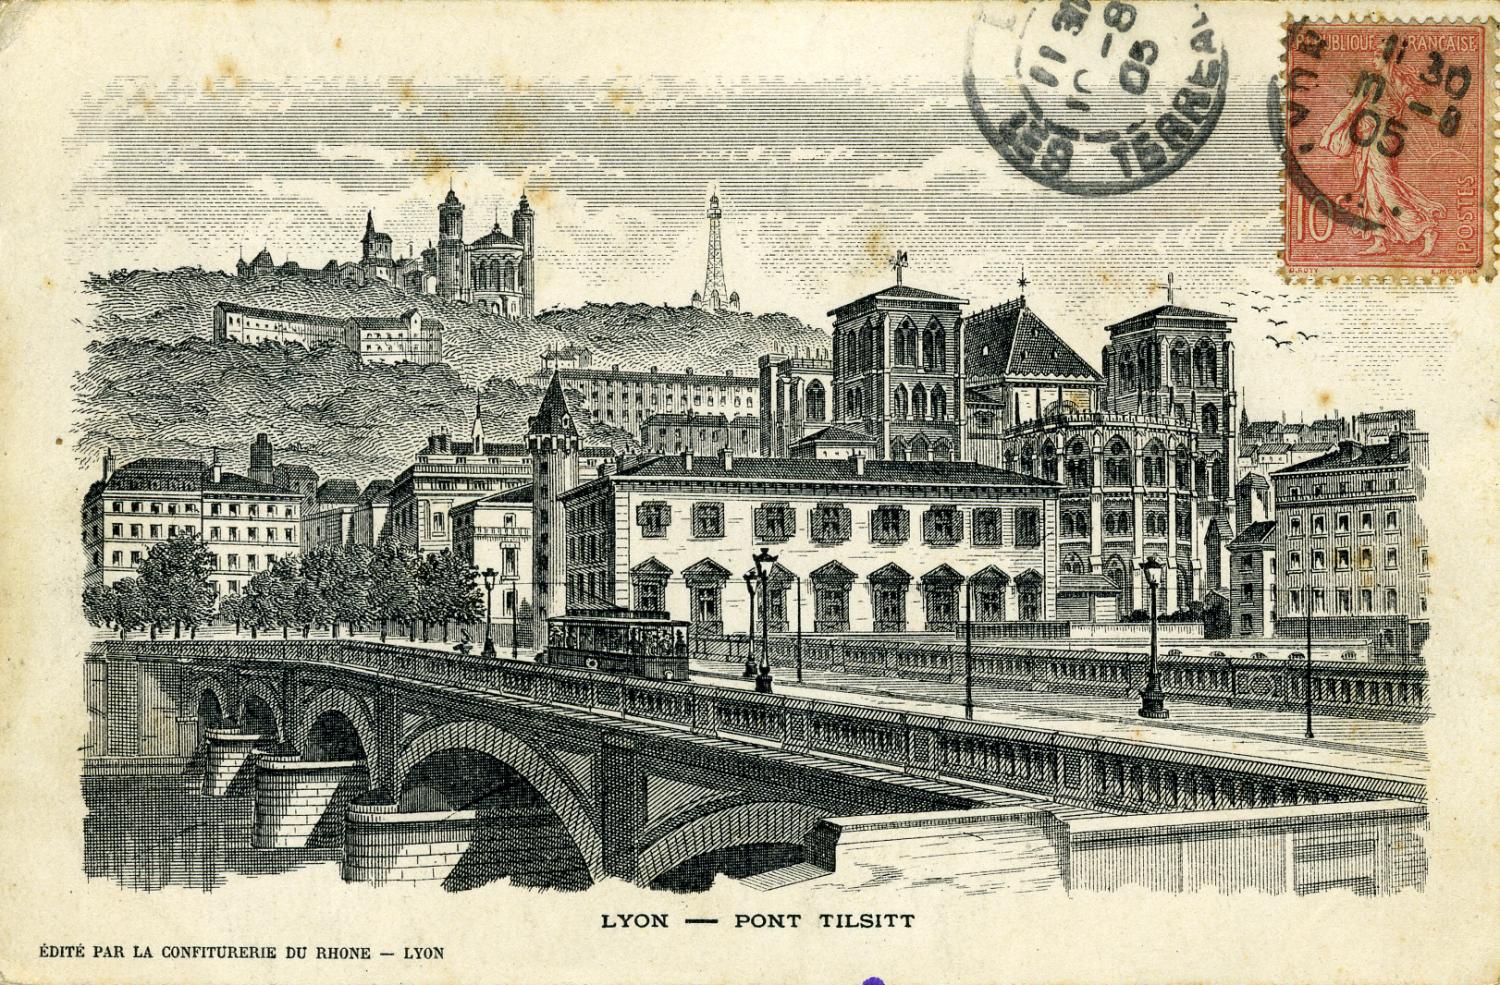 Lyon - Pont Tilsitt